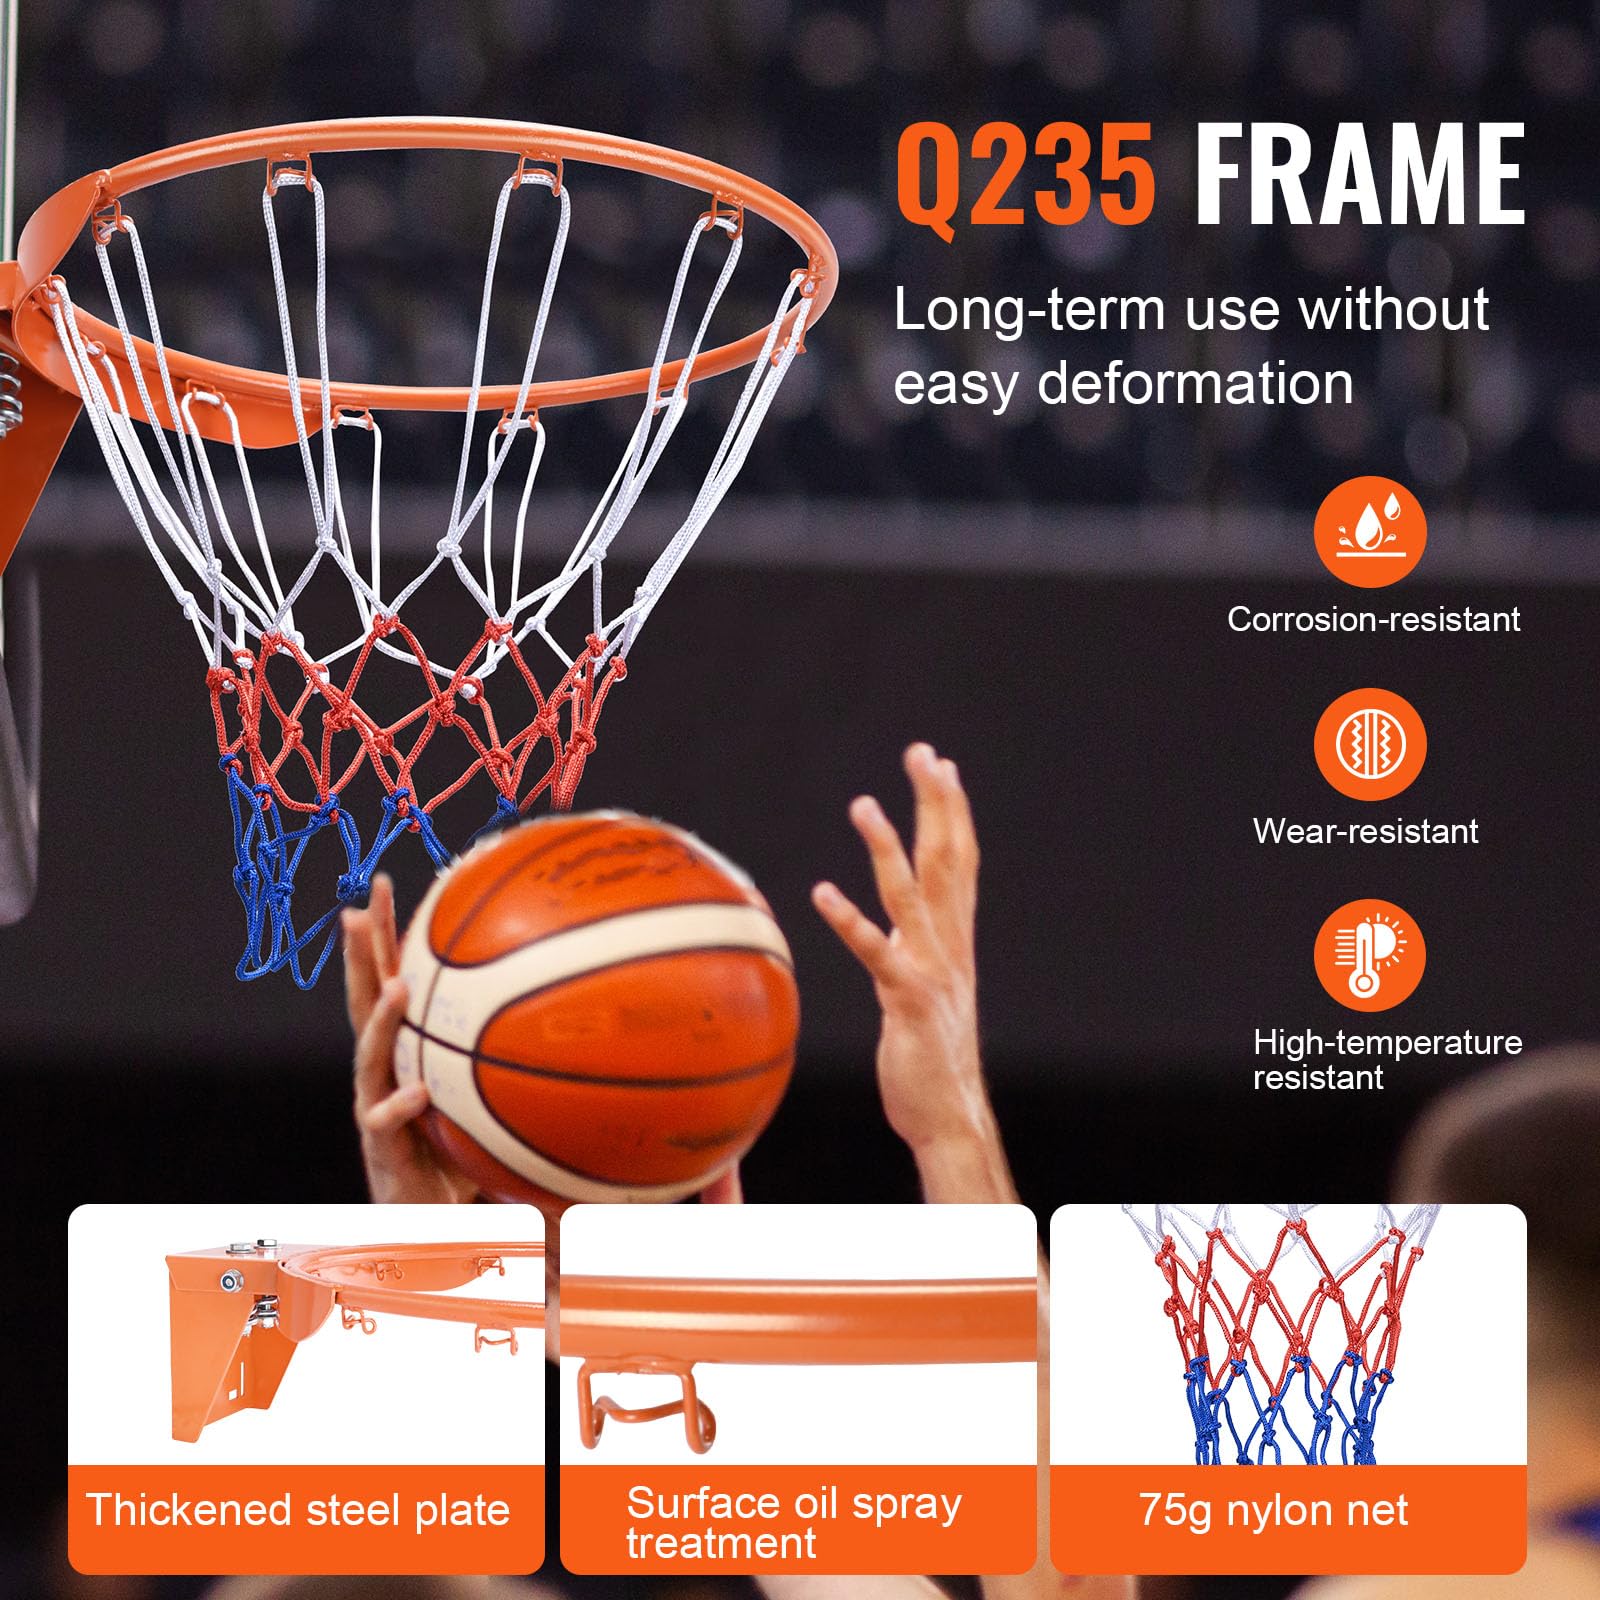 VEVOR Basketball Rim, Wall Door Mounted Basketball Hoop, Heavy Duty Q235 Basketball Flex Rim Goal Replacement with Net, Standard 18